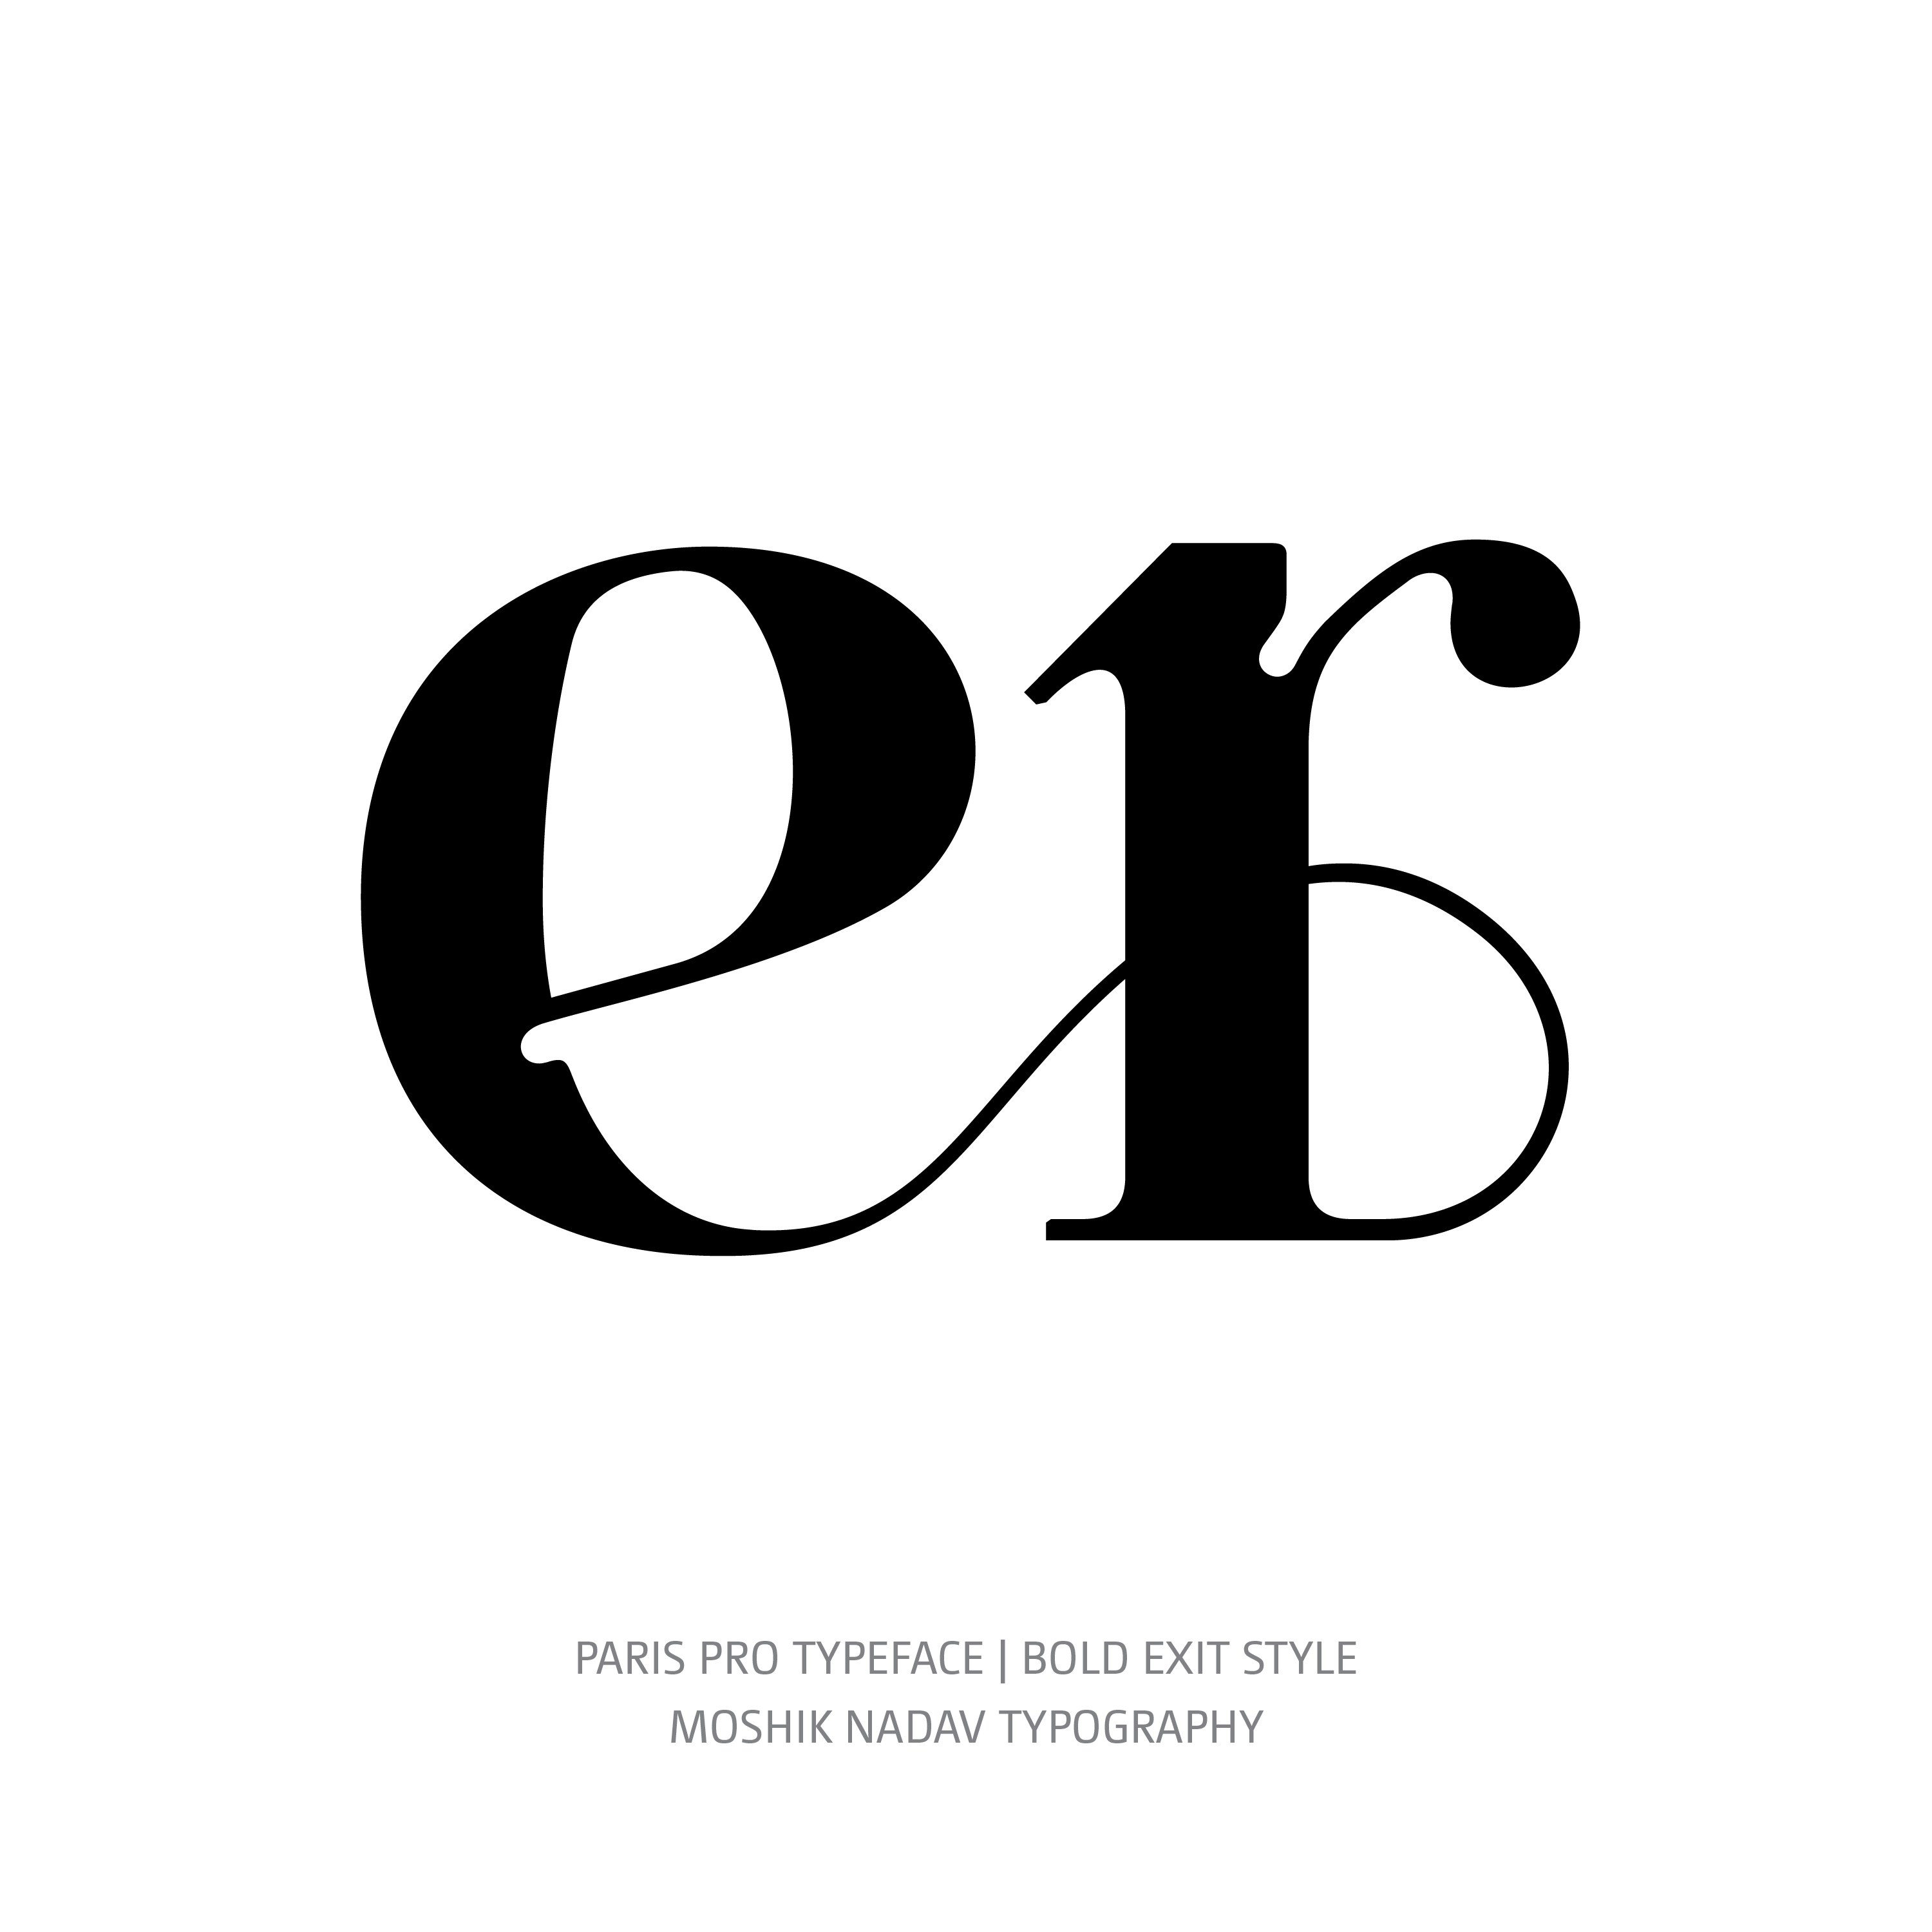 Paris Pro Typeface Bold Exit on alternative ligature